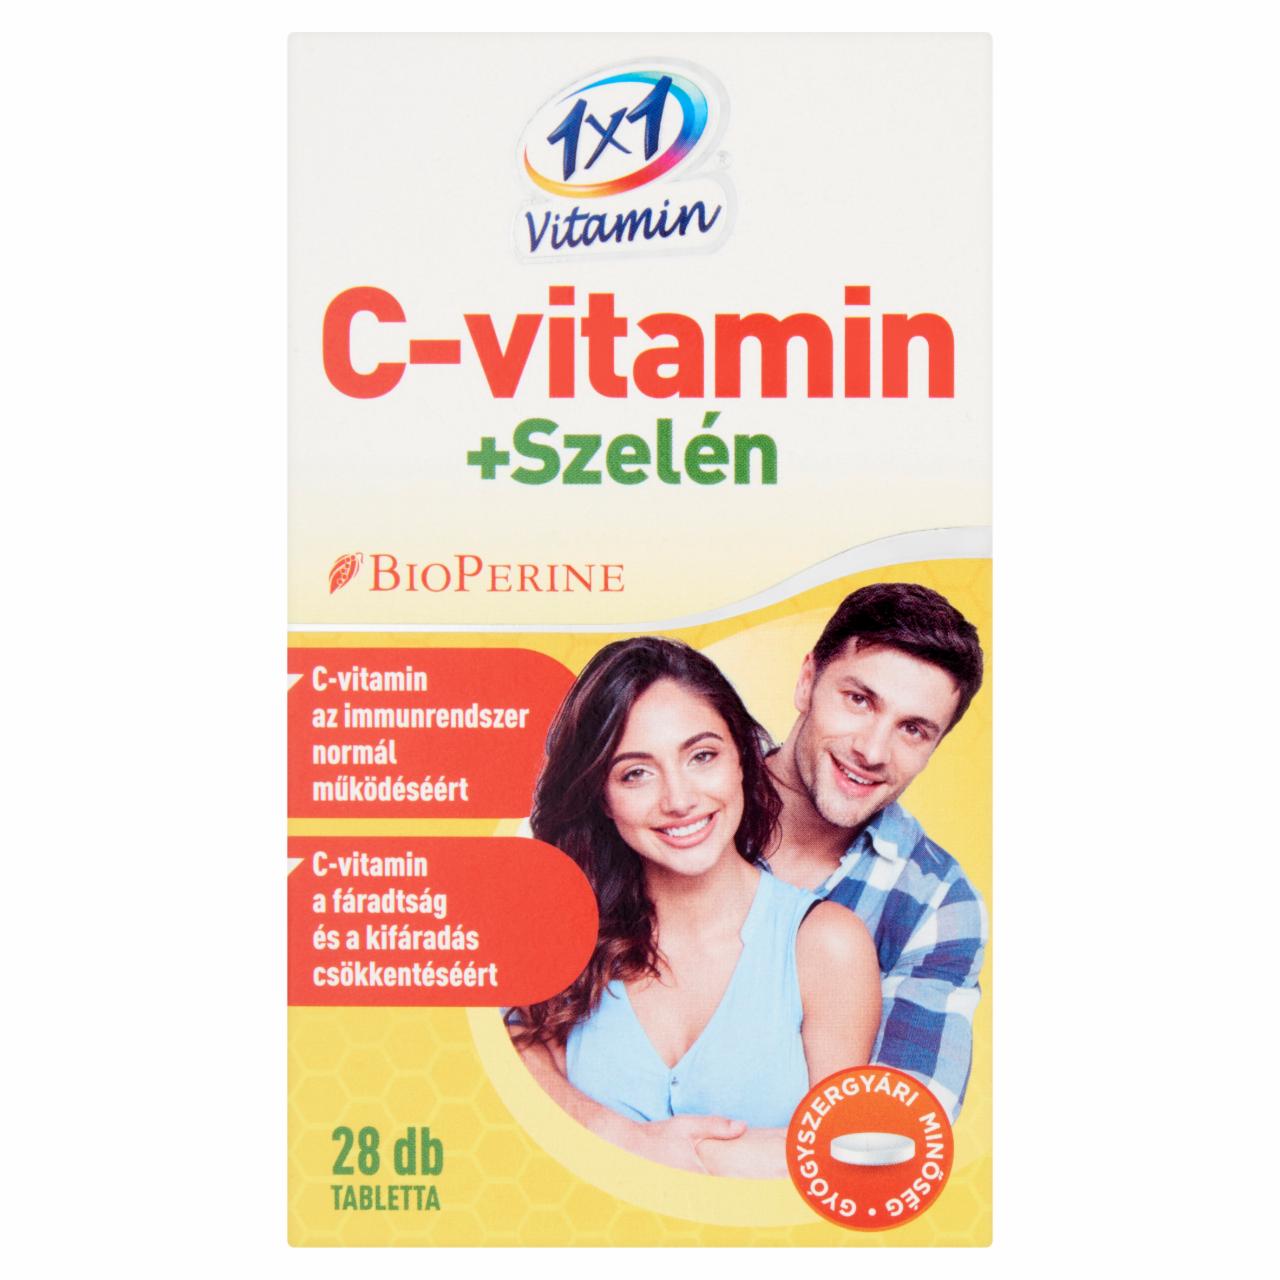 Képek - 1x1 Vitamin C-vitamin + Szelén étrend-kiegészítő filmtabletta 28 db 14 g